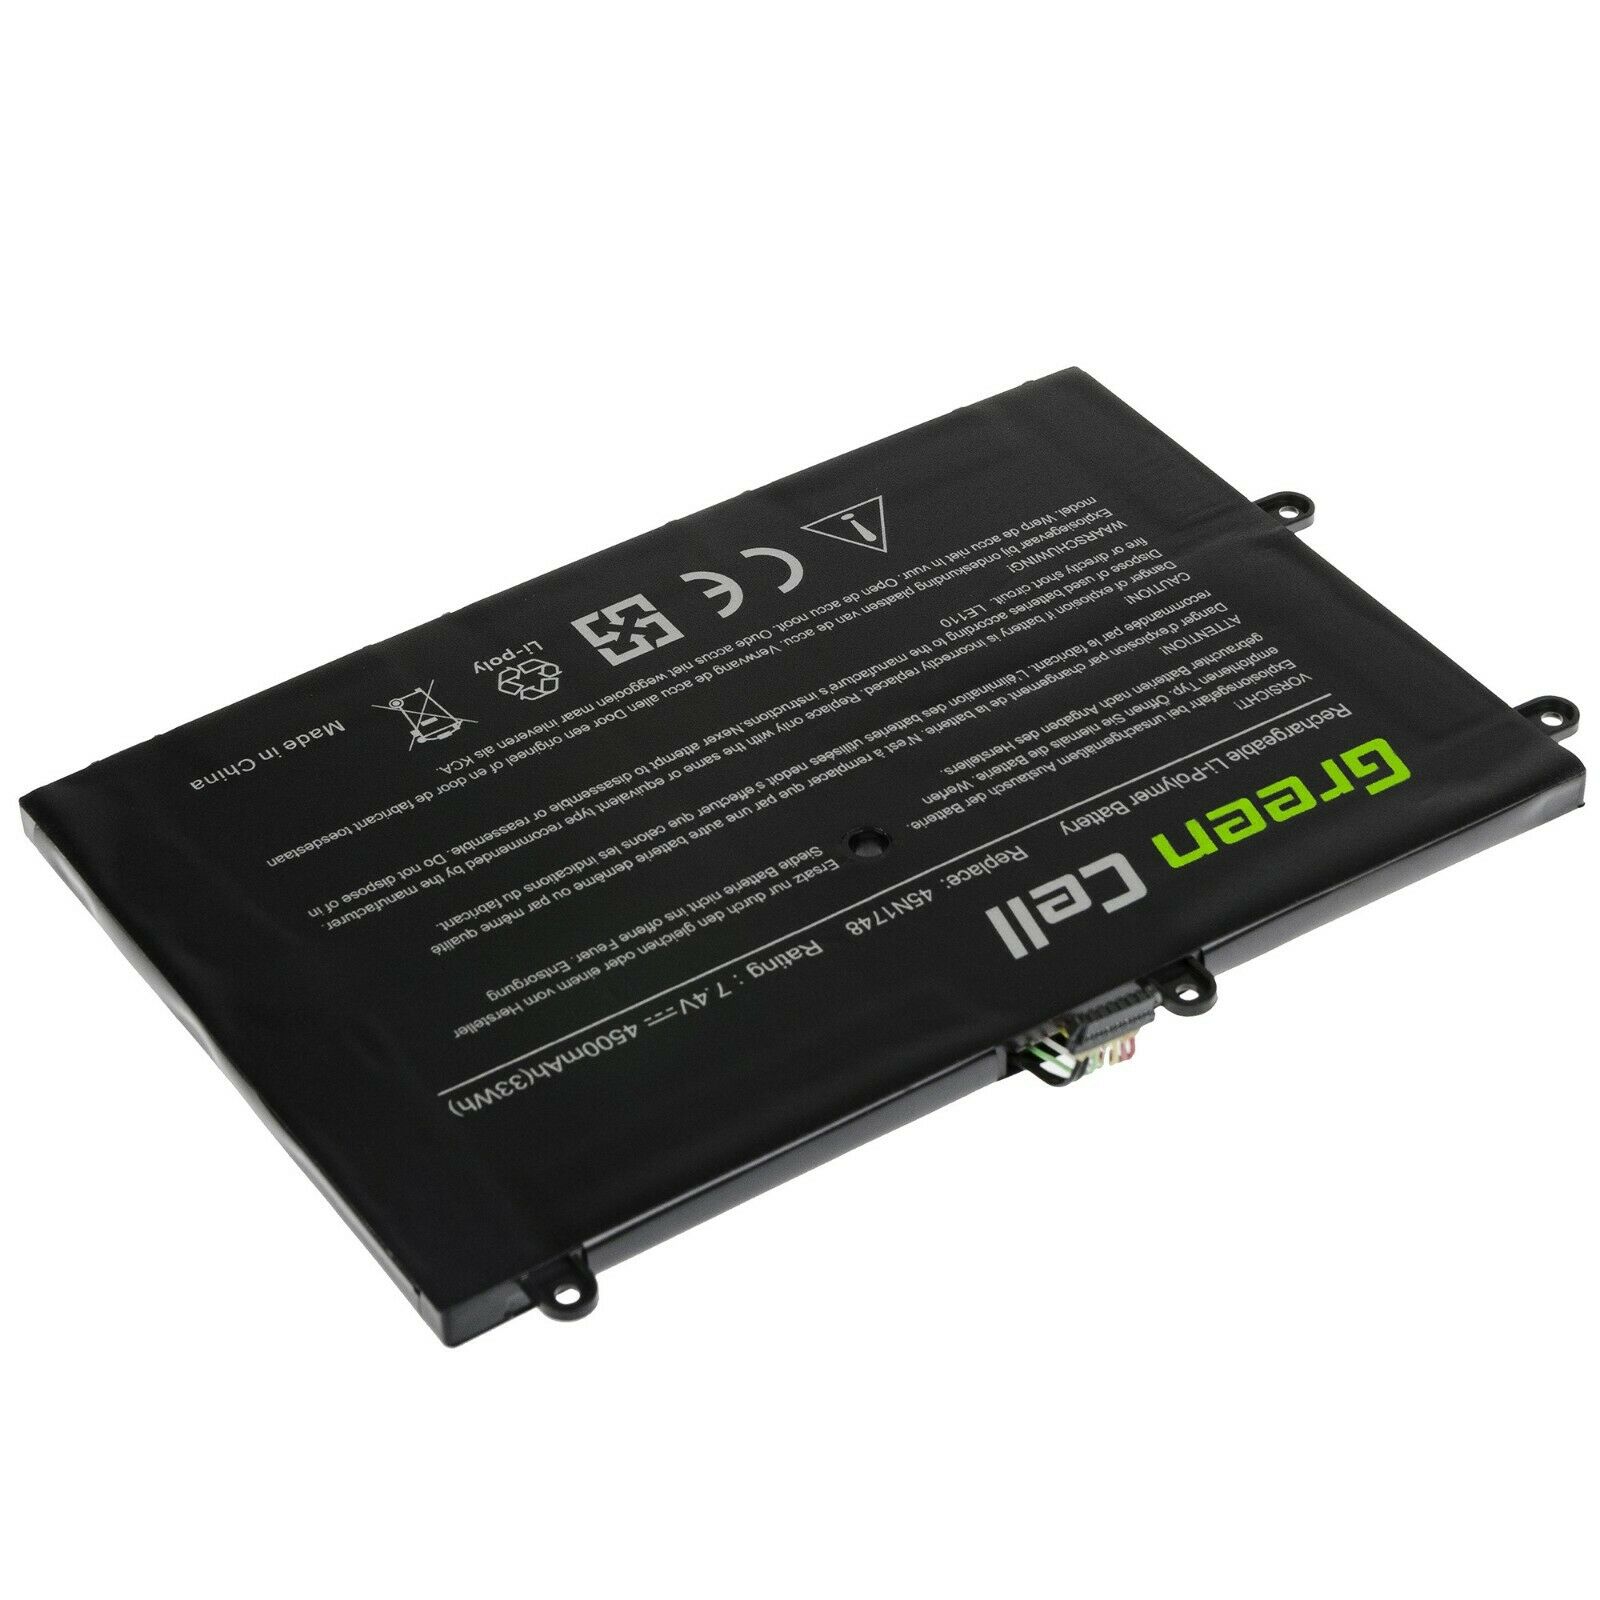 Lenovo 11e (20E6/20E8),(20ED/20EE),(20G9/20GB),45N1748,45N1749,45N1750 compatible battery